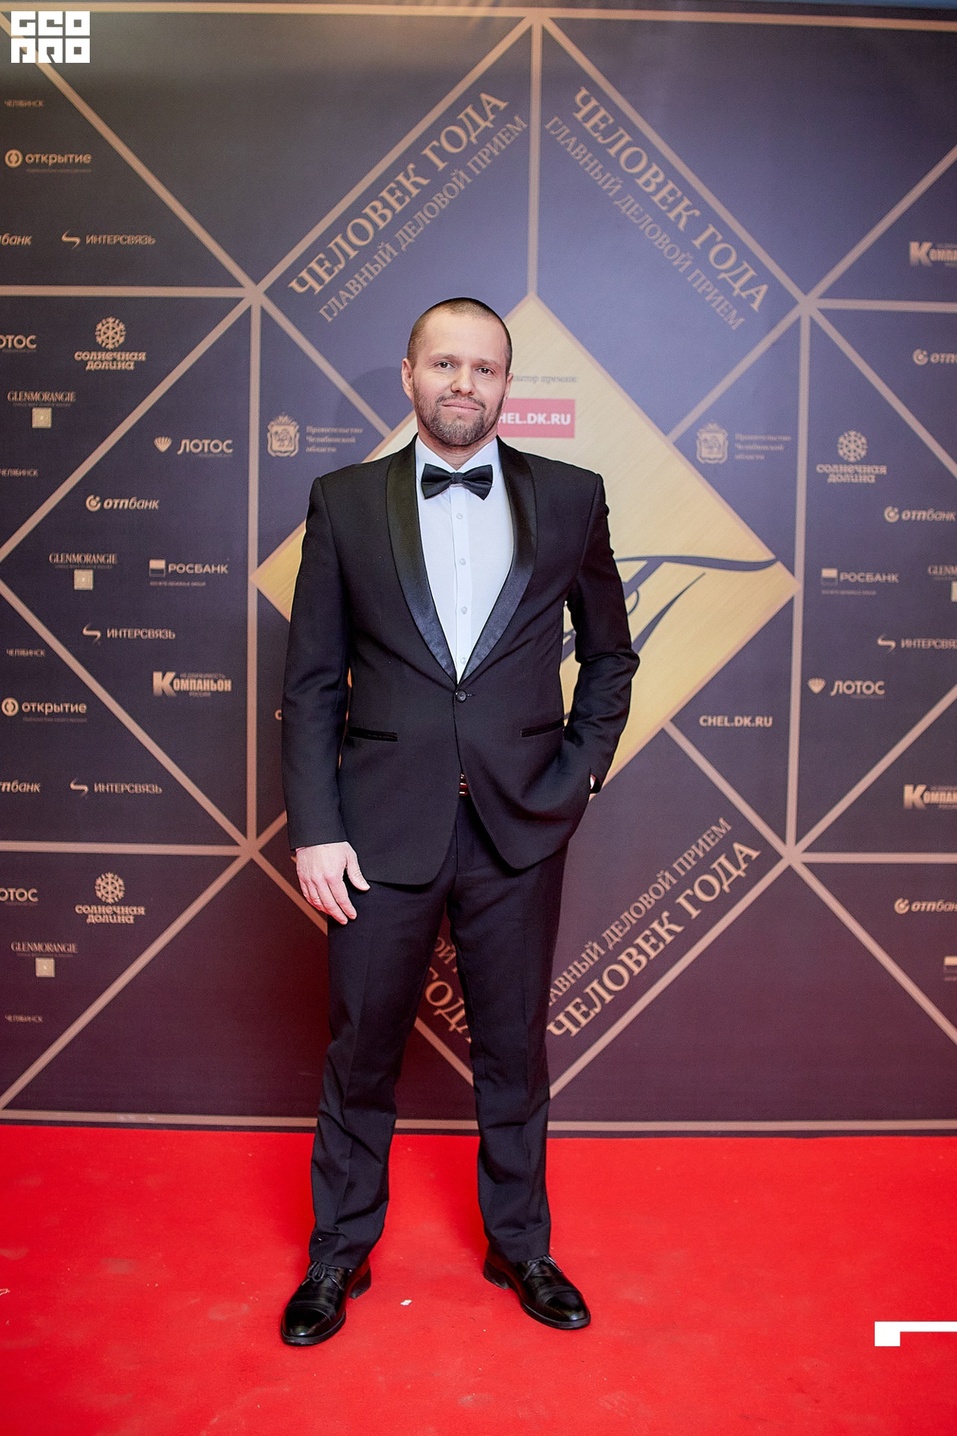 Роскошный black tie: что надеть на вручение премии «Человек года» в Челябинске

 1